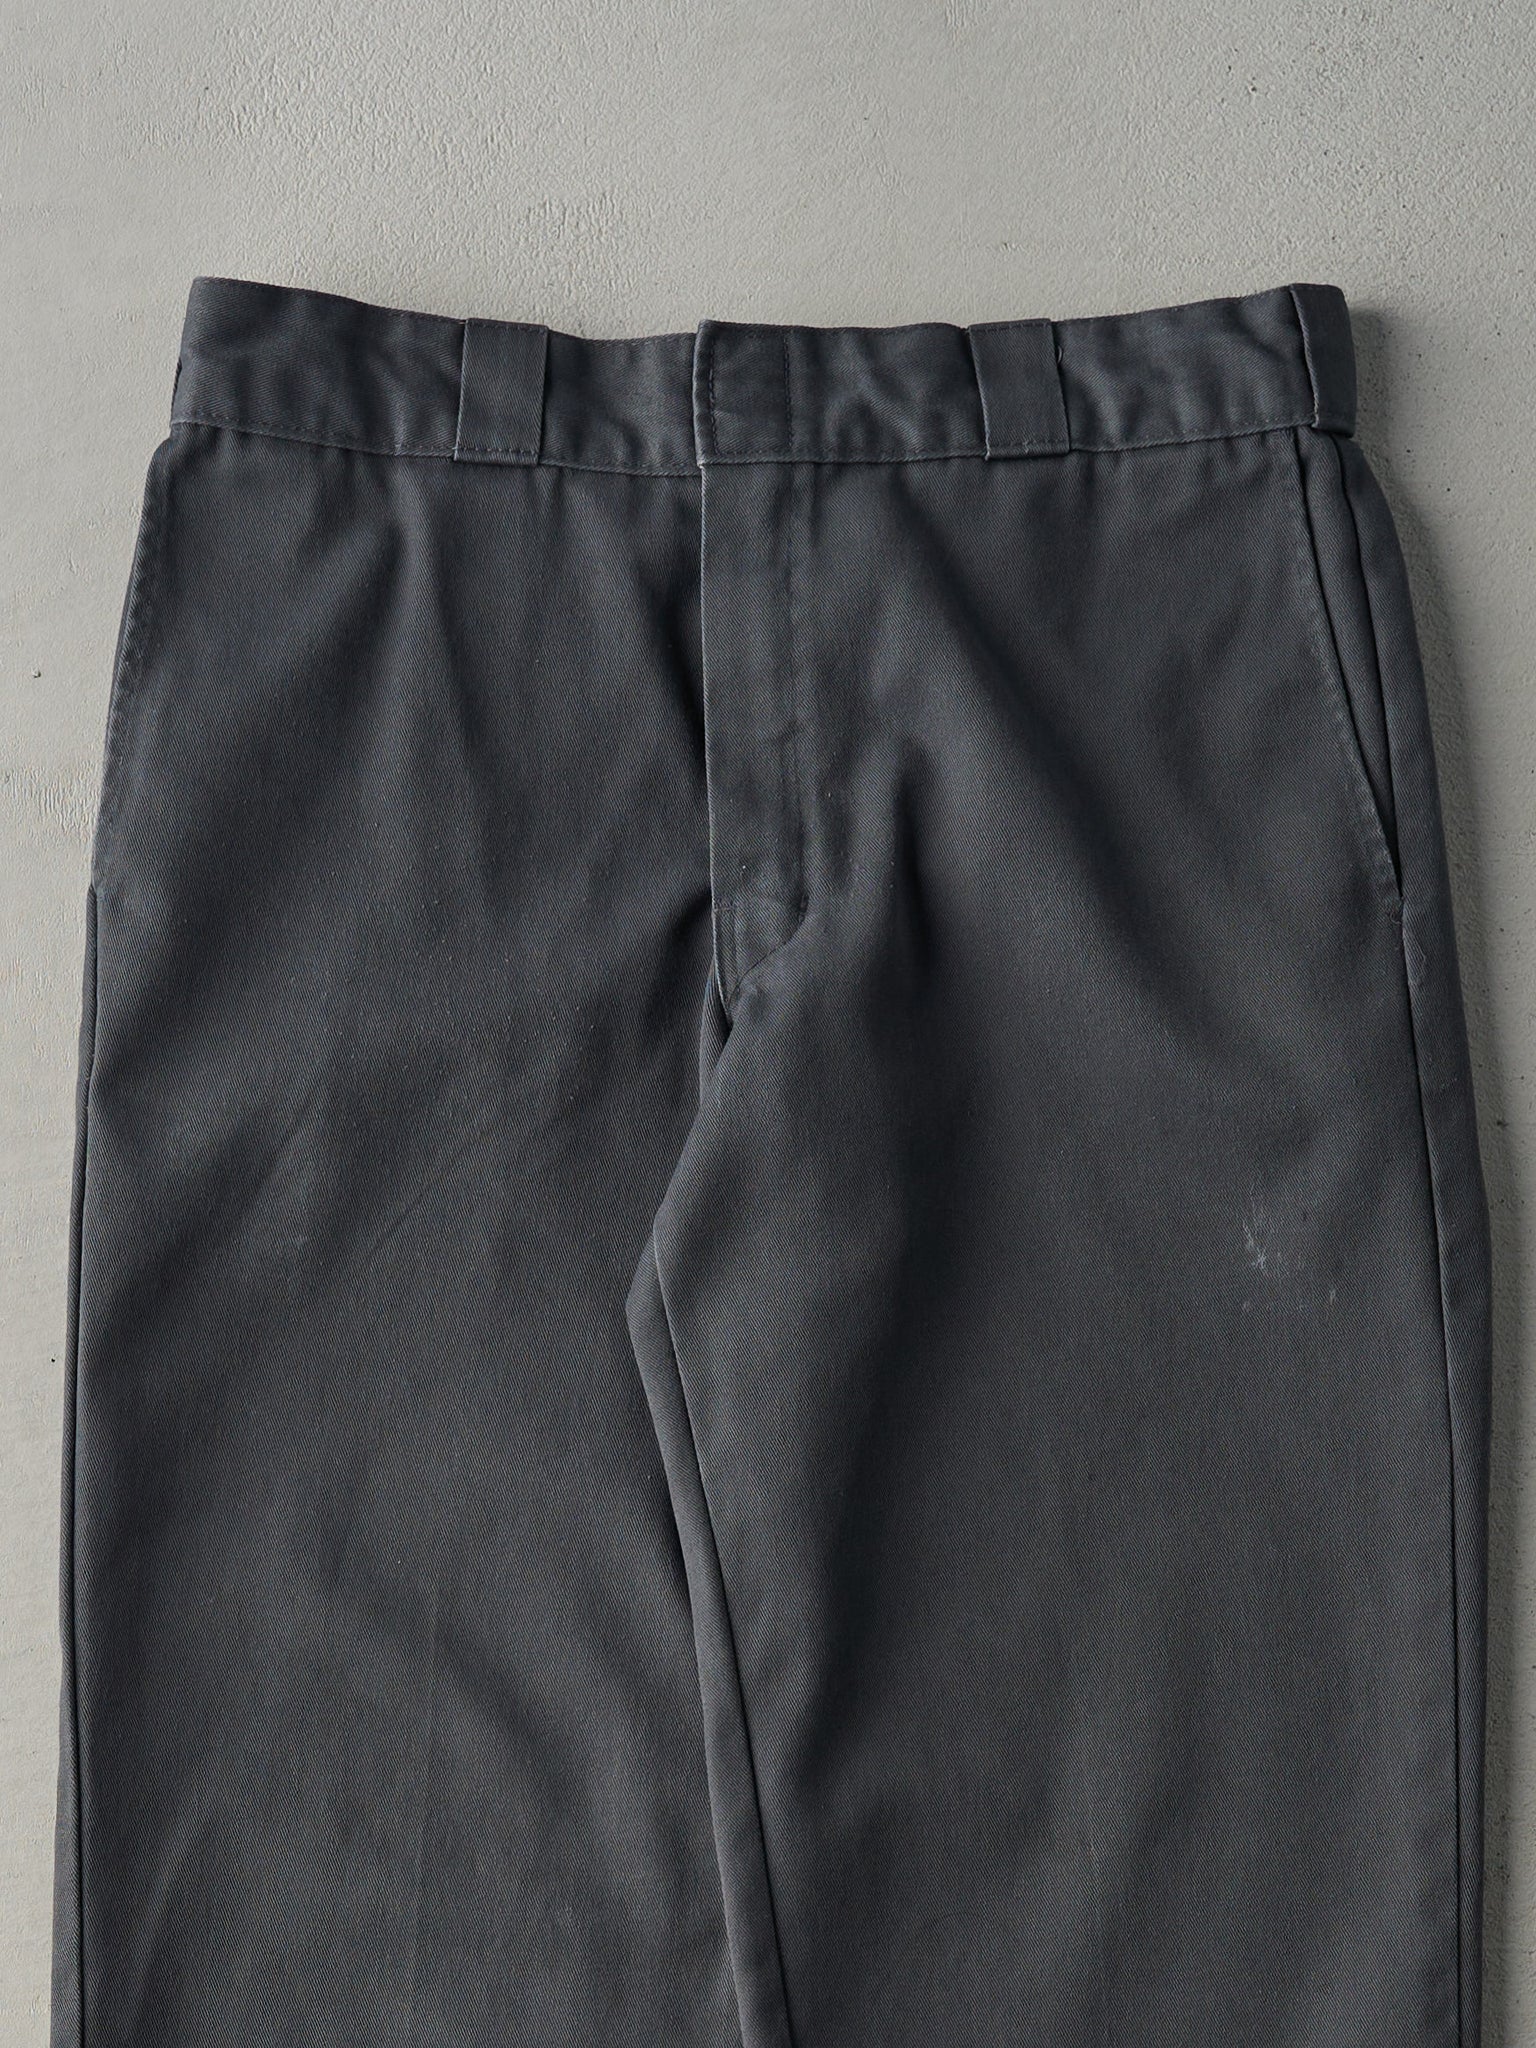 Vintage 90s Grey 874 Original Fit Dickies Work Pants (32x27)